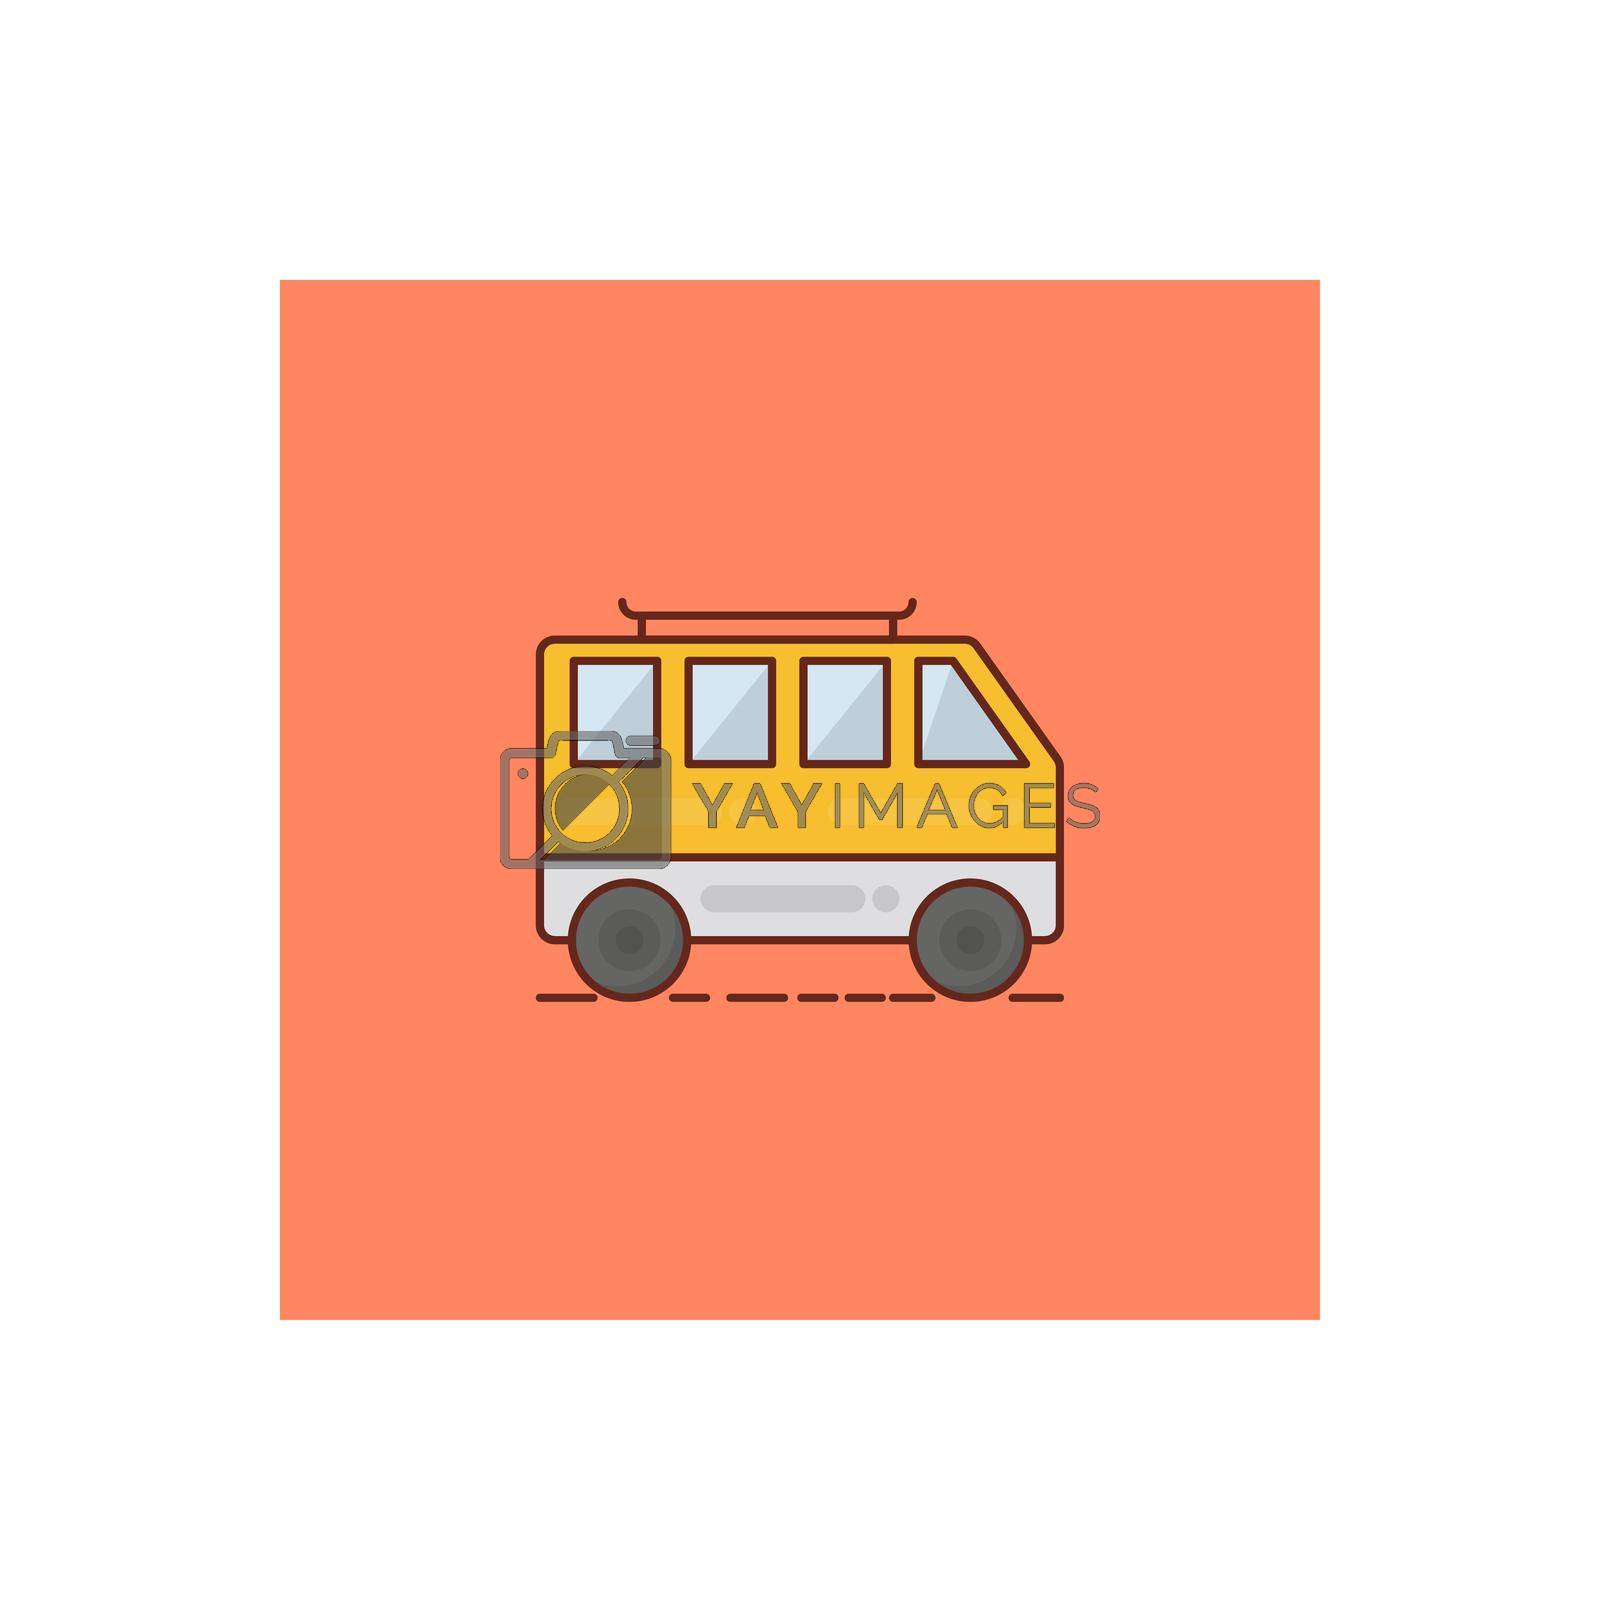 bus vector flat color icon